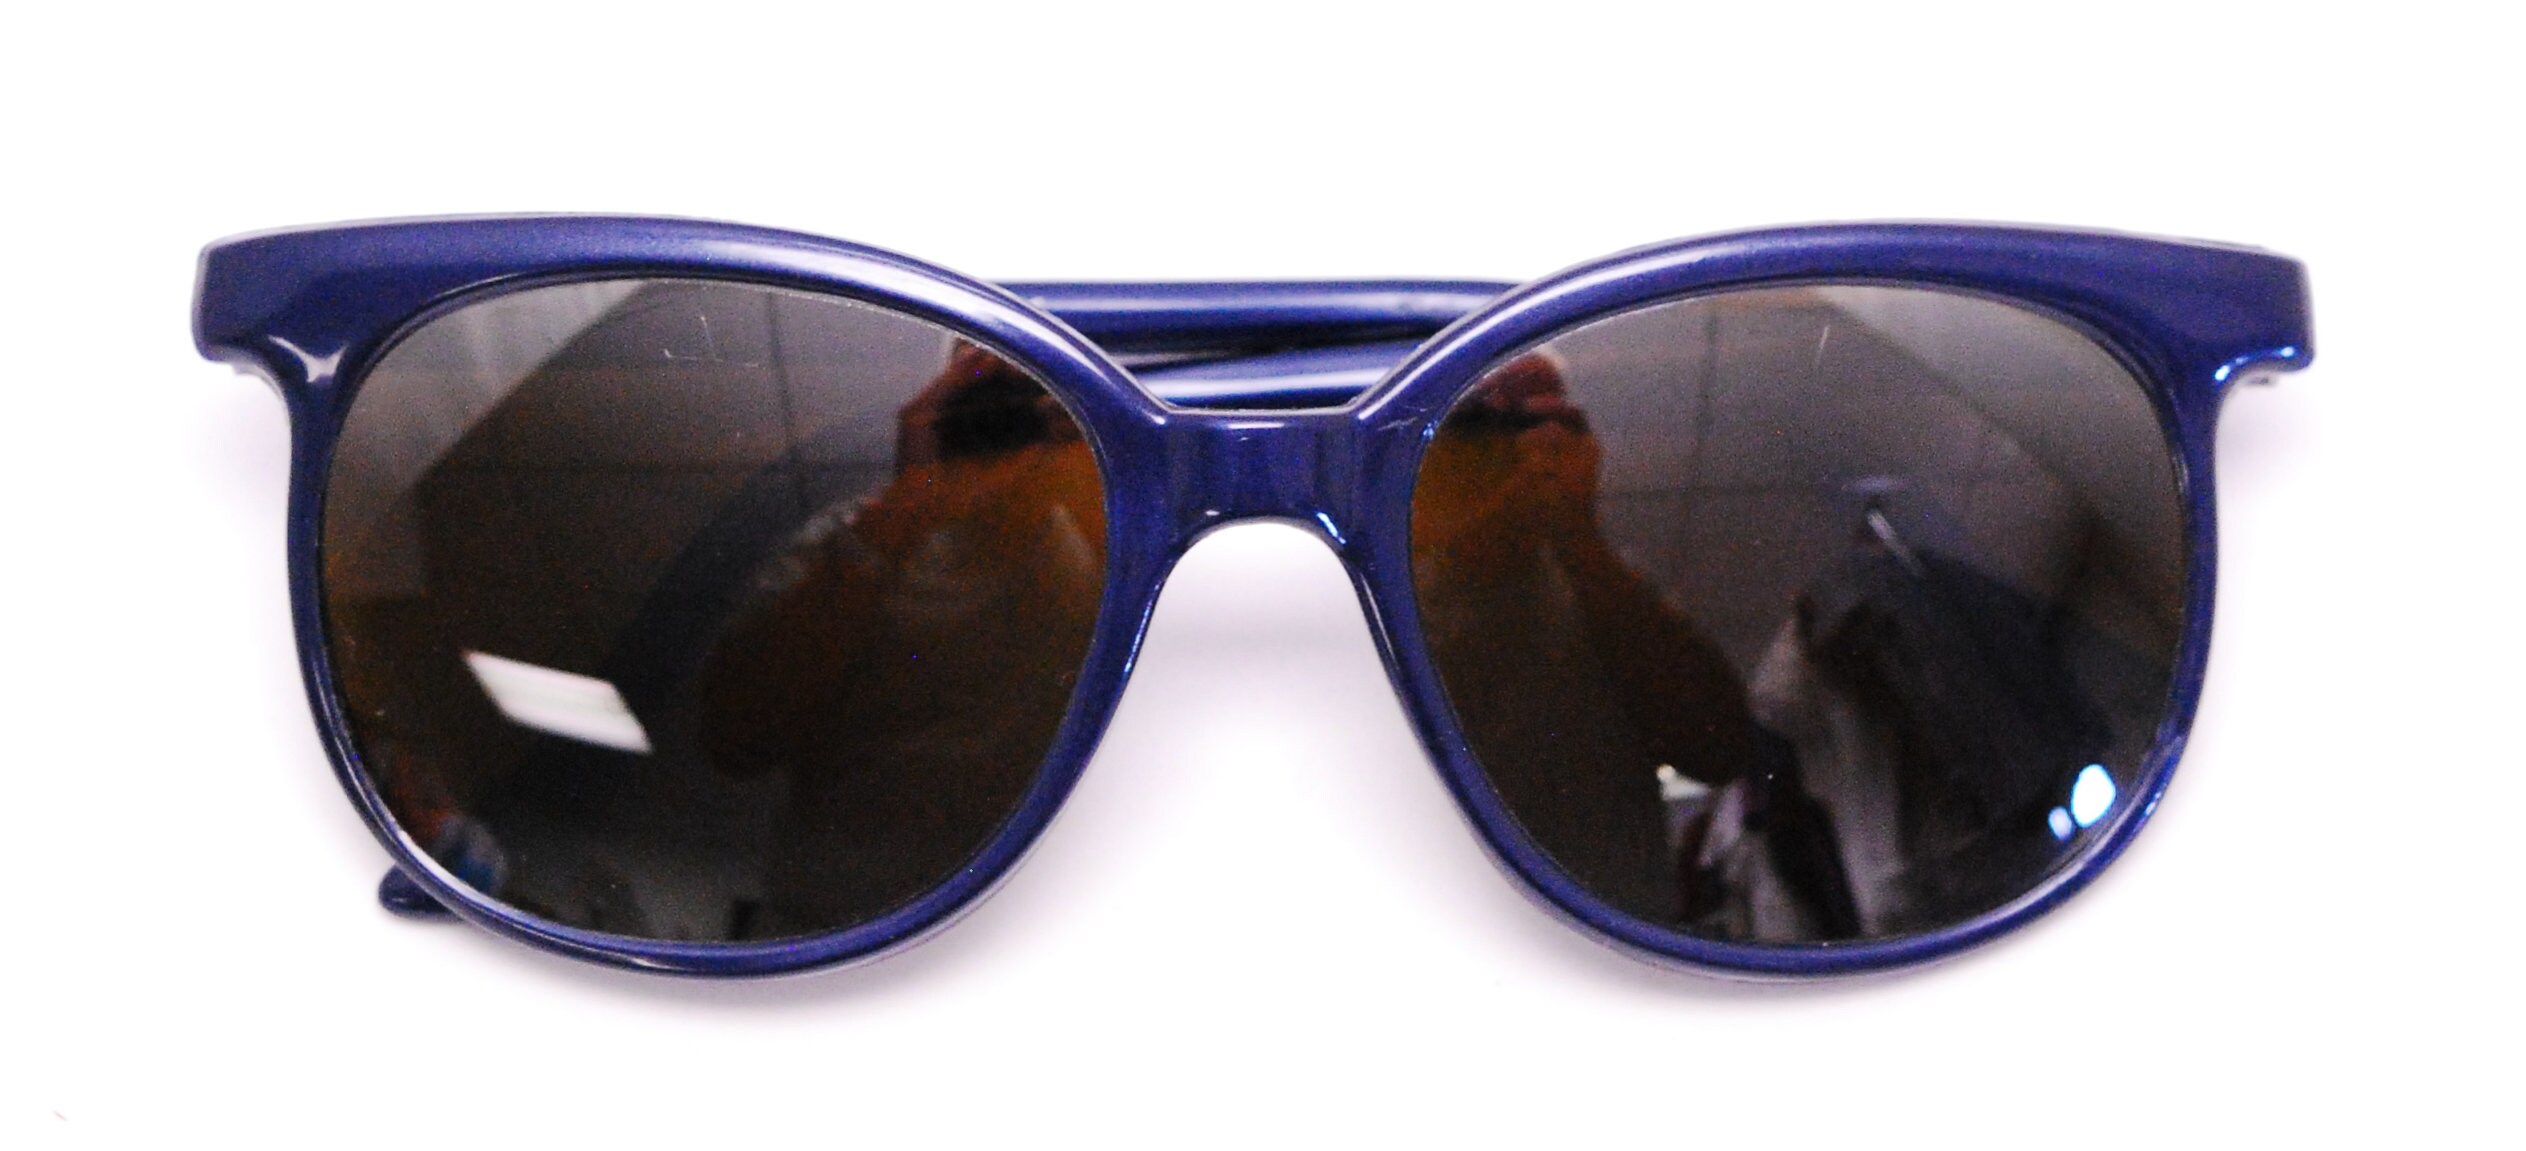 Vintage 1970's/80's Blue VUARNET Sunglasses / Pouilloux France / Model 002  D / Retro Collectable Rare 2542 - Etsy